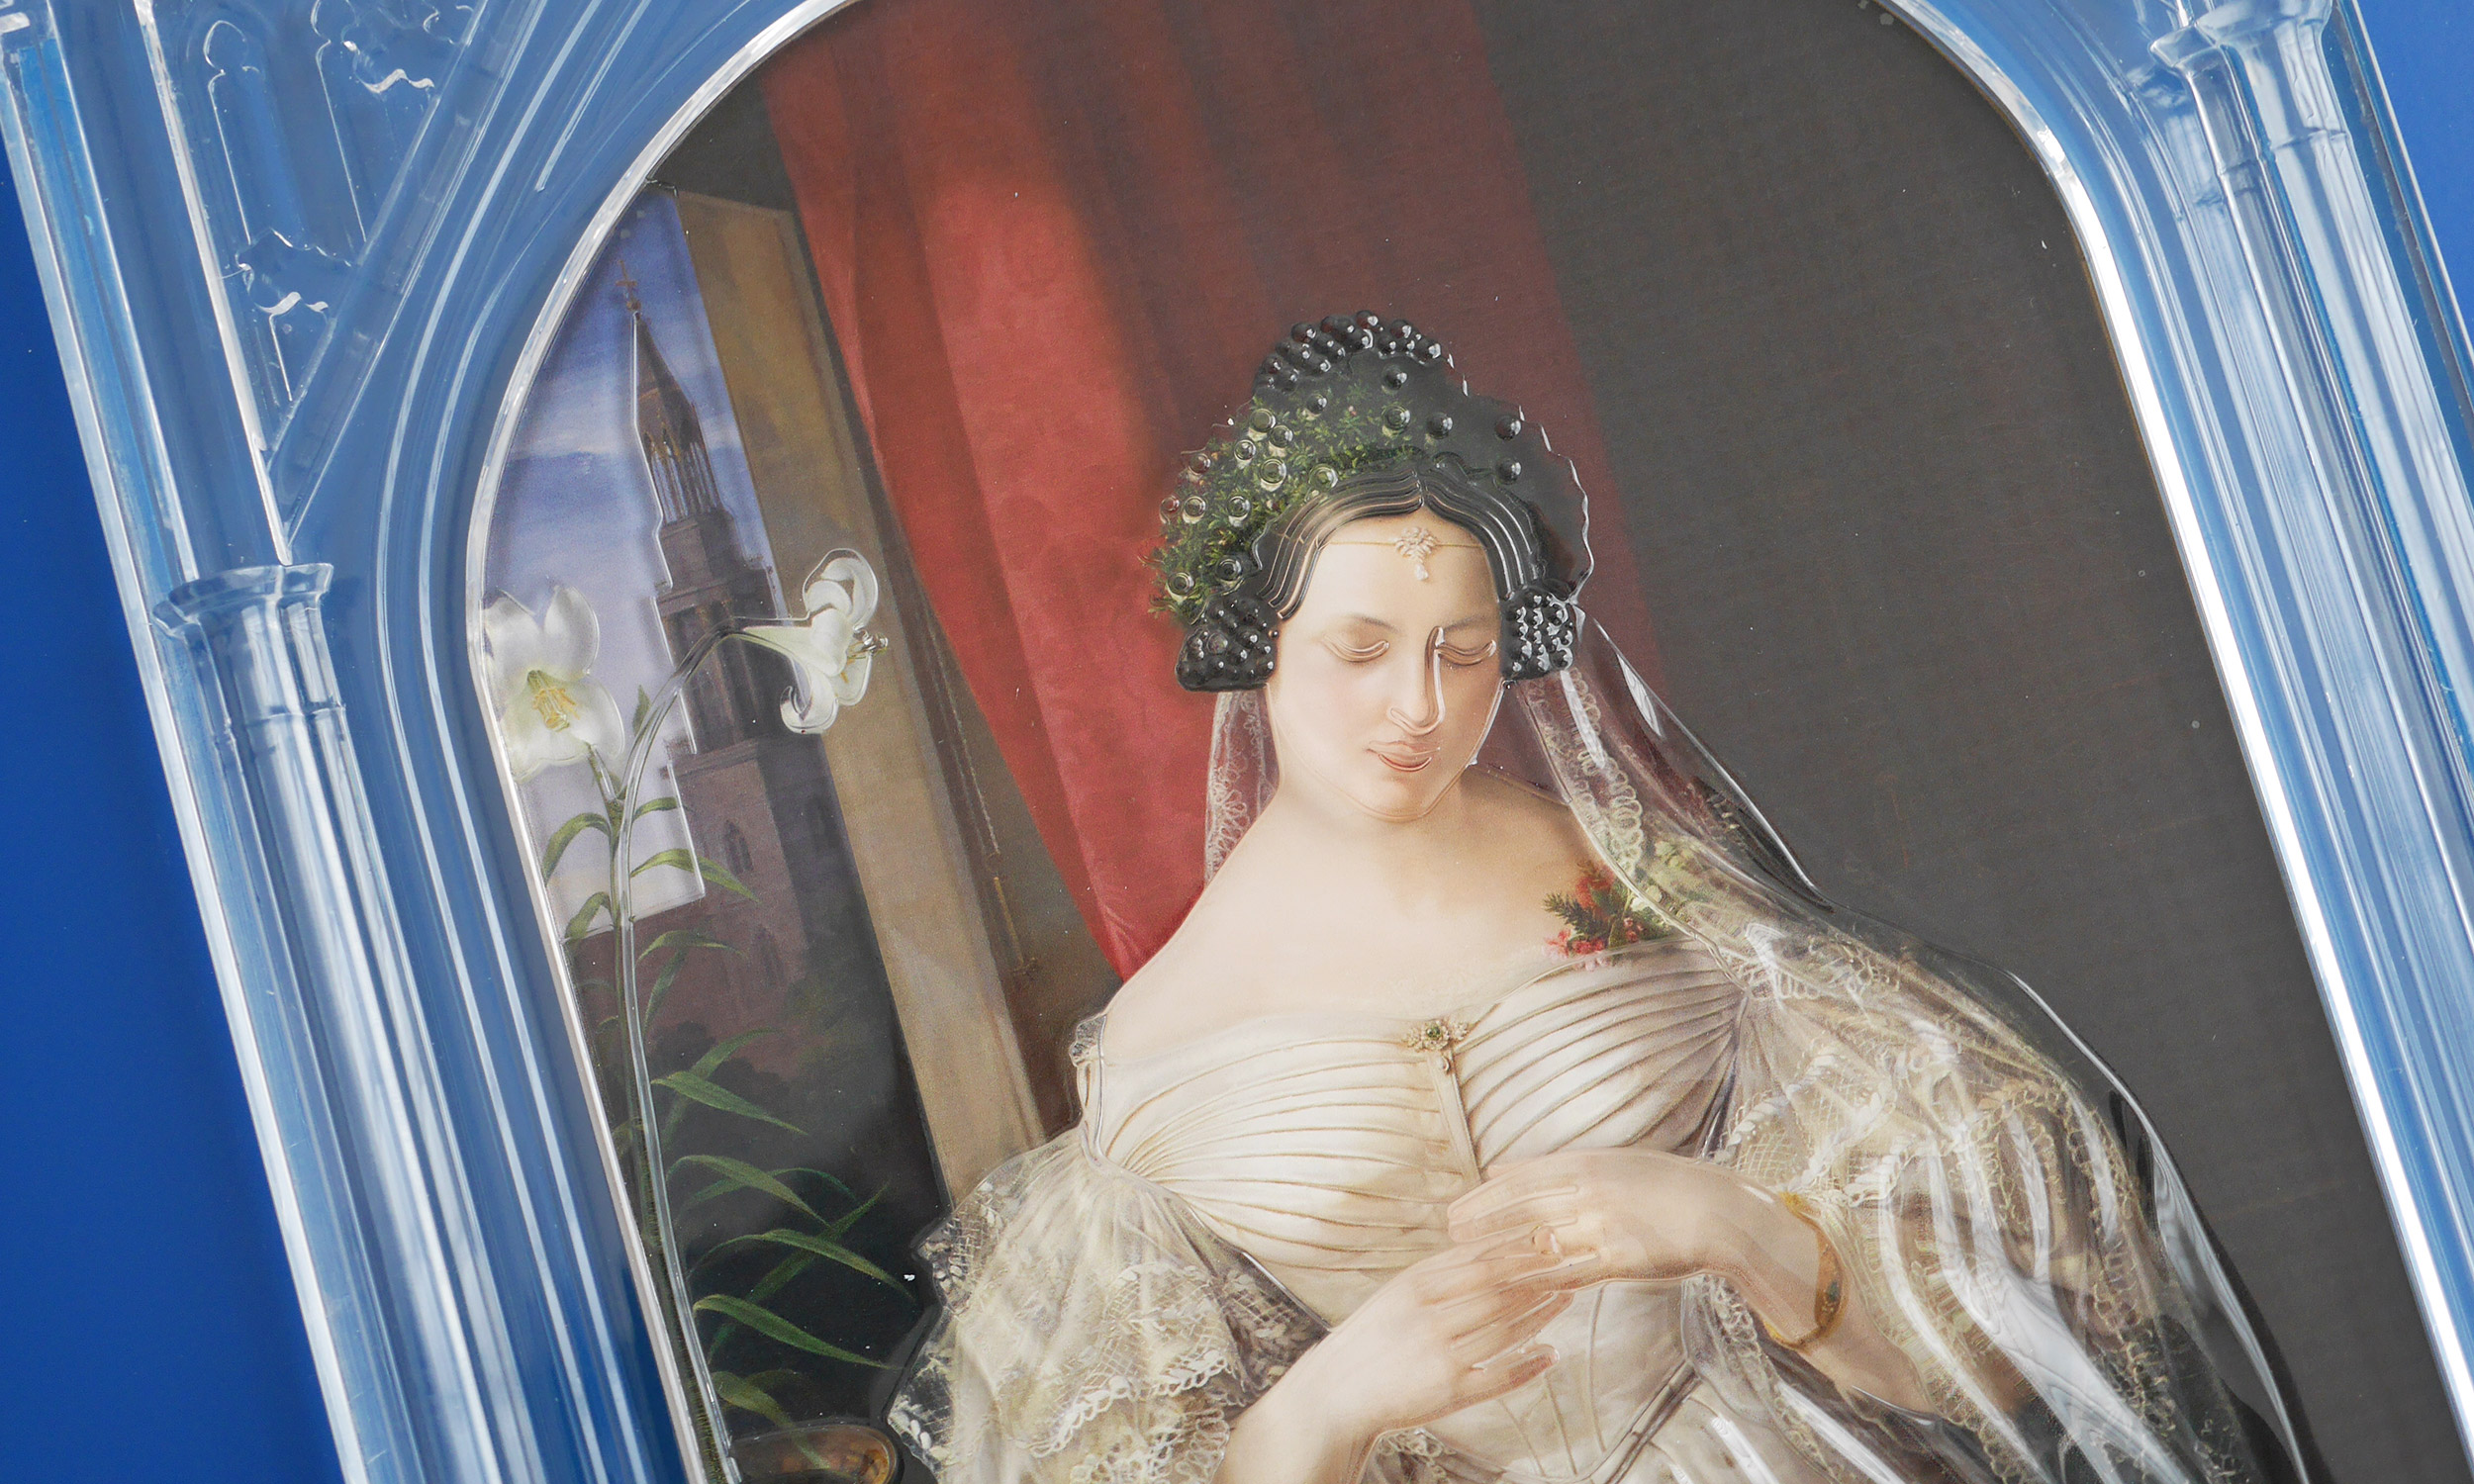 Detailfoto vom oberen Teil eines Tastmodells. Das Bild zeigt das Gemälde „Albertine Heine als Braut“ im Jüdischen Museum, Berlin